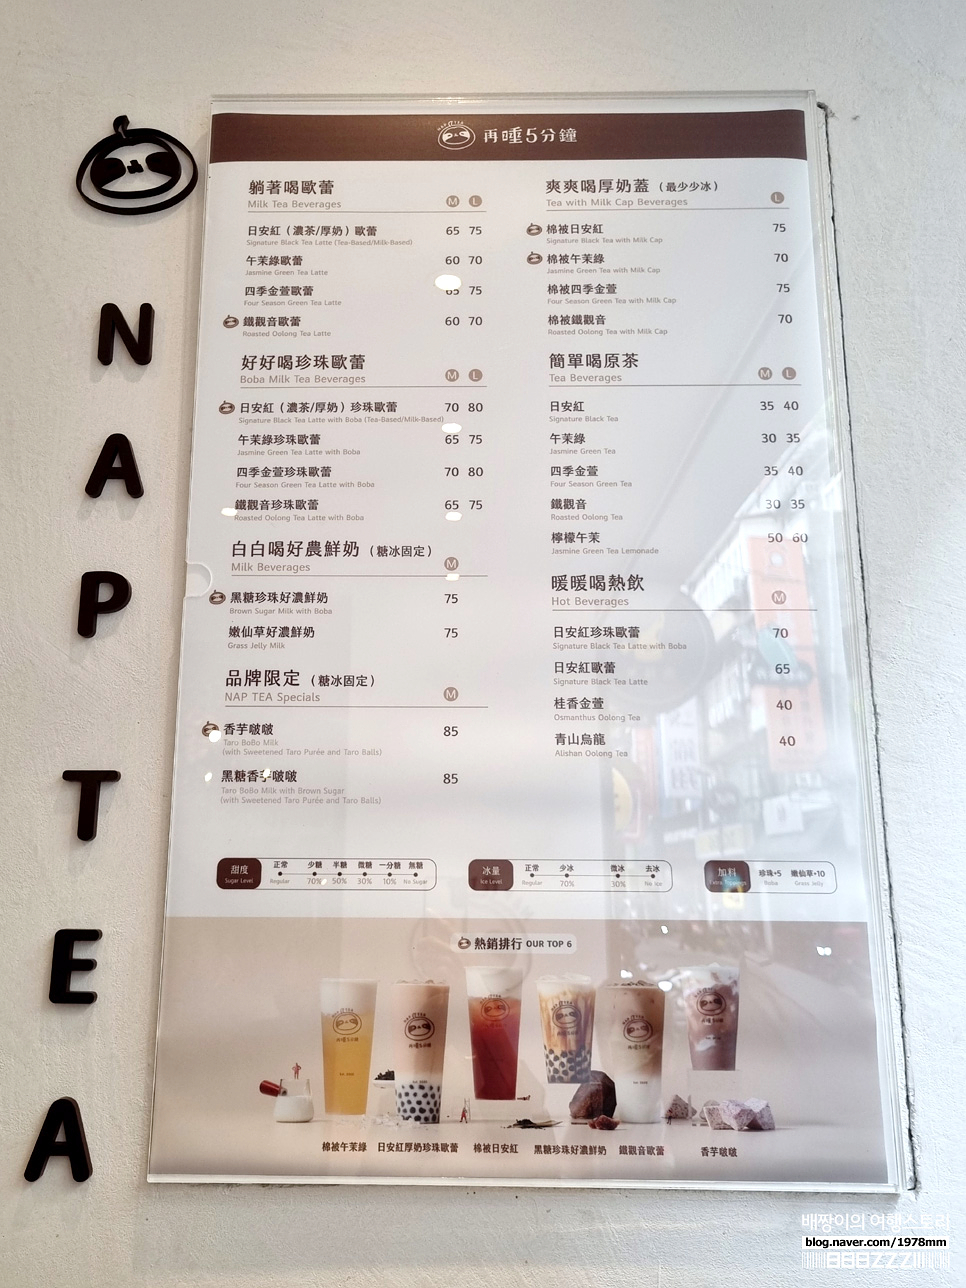 대만 타이베이 밀크티 버블티 맛집 시먼딩 행복당 & Nap Tea 음식 먹거리 자유여행